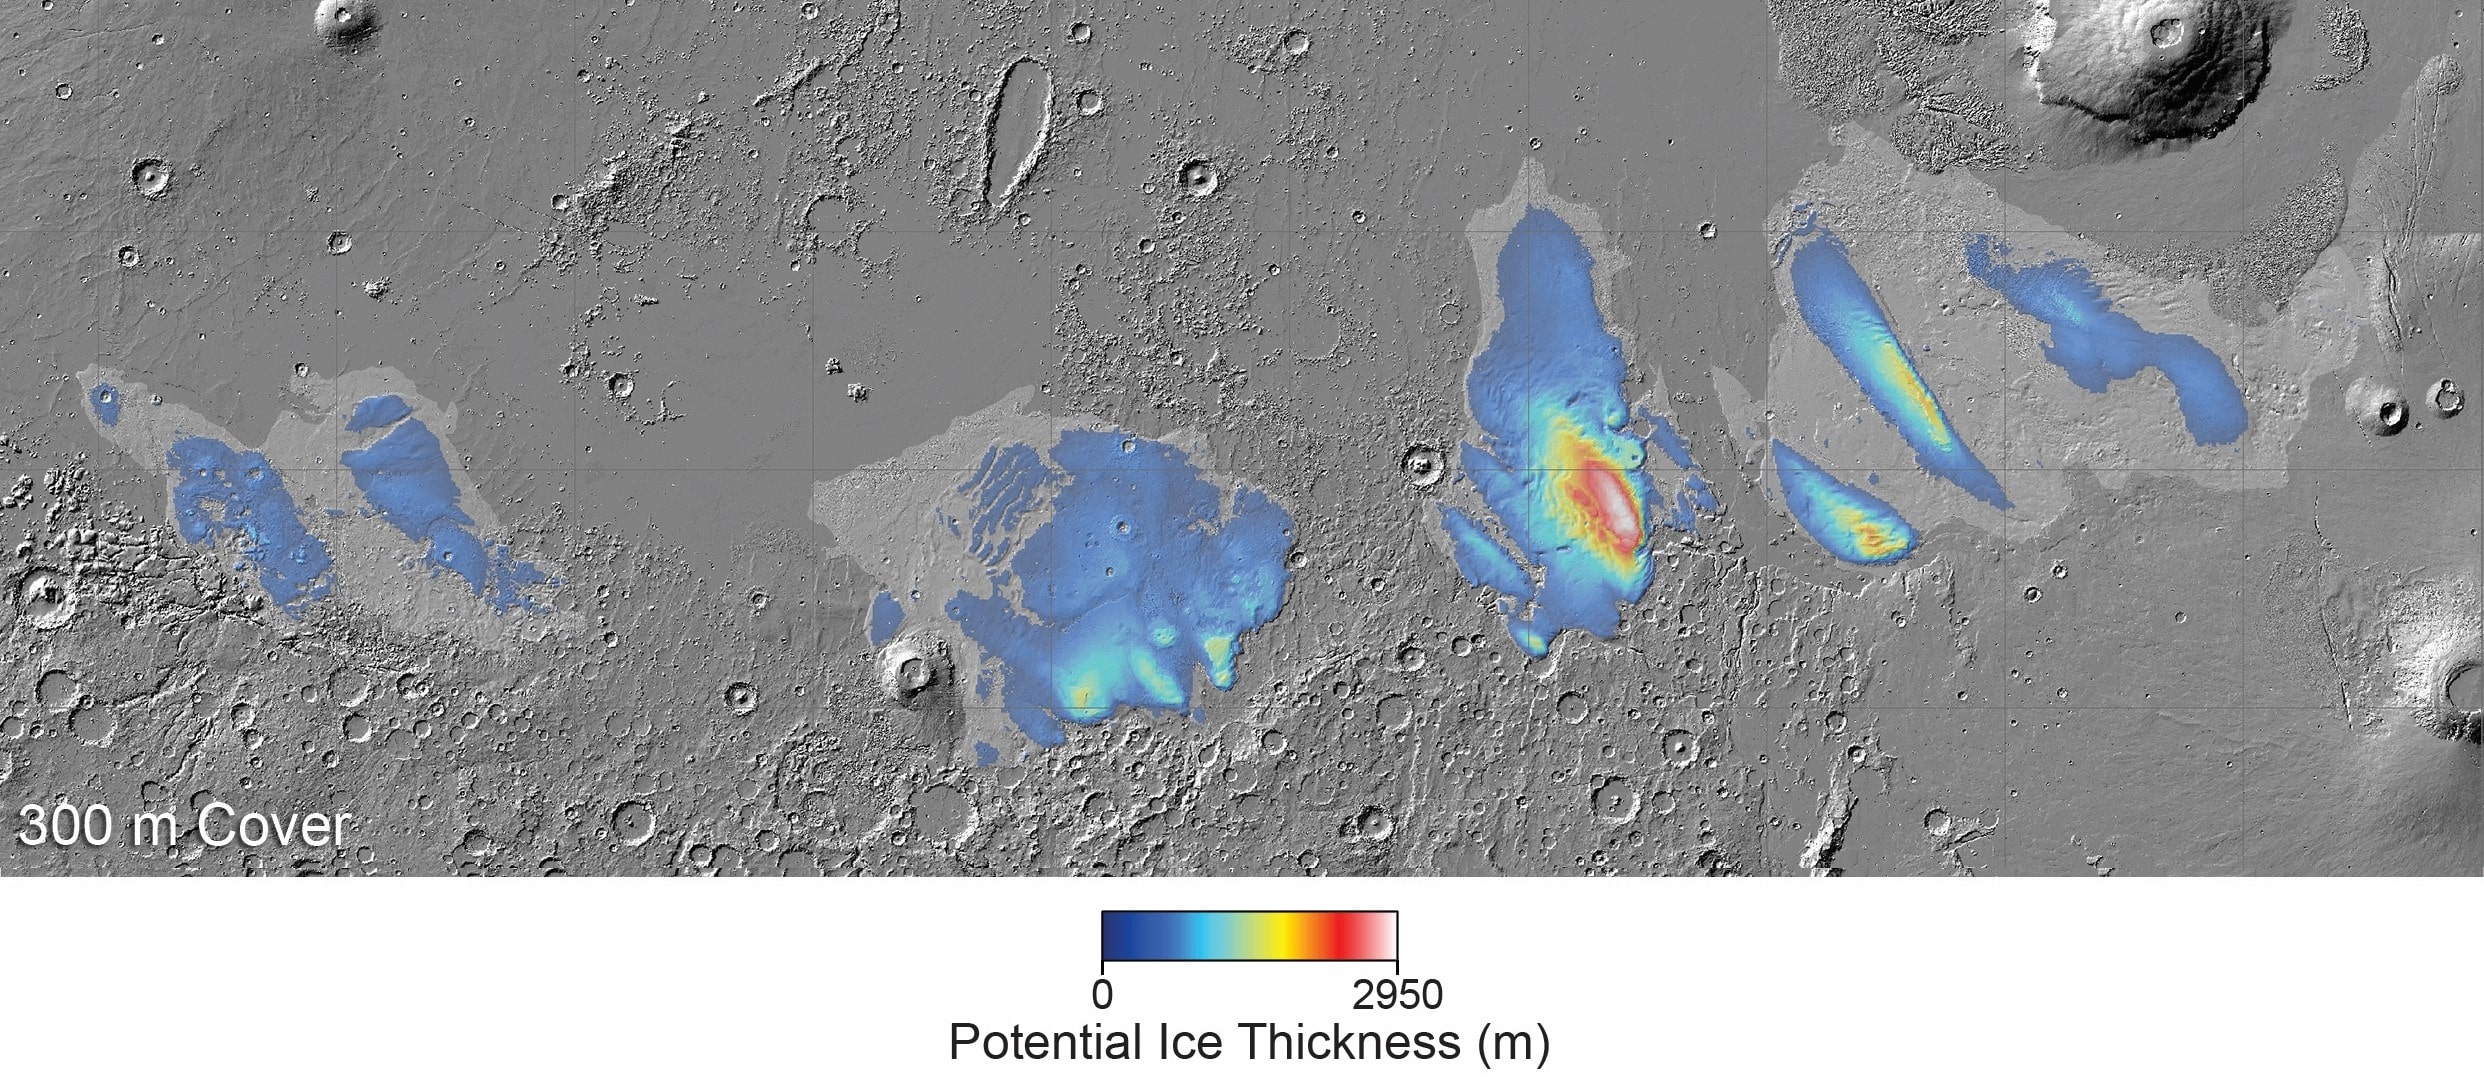 کشف یخ مشکوک به ارزش کوچک اقیانوسی در زیر سطح مریخ | High Times